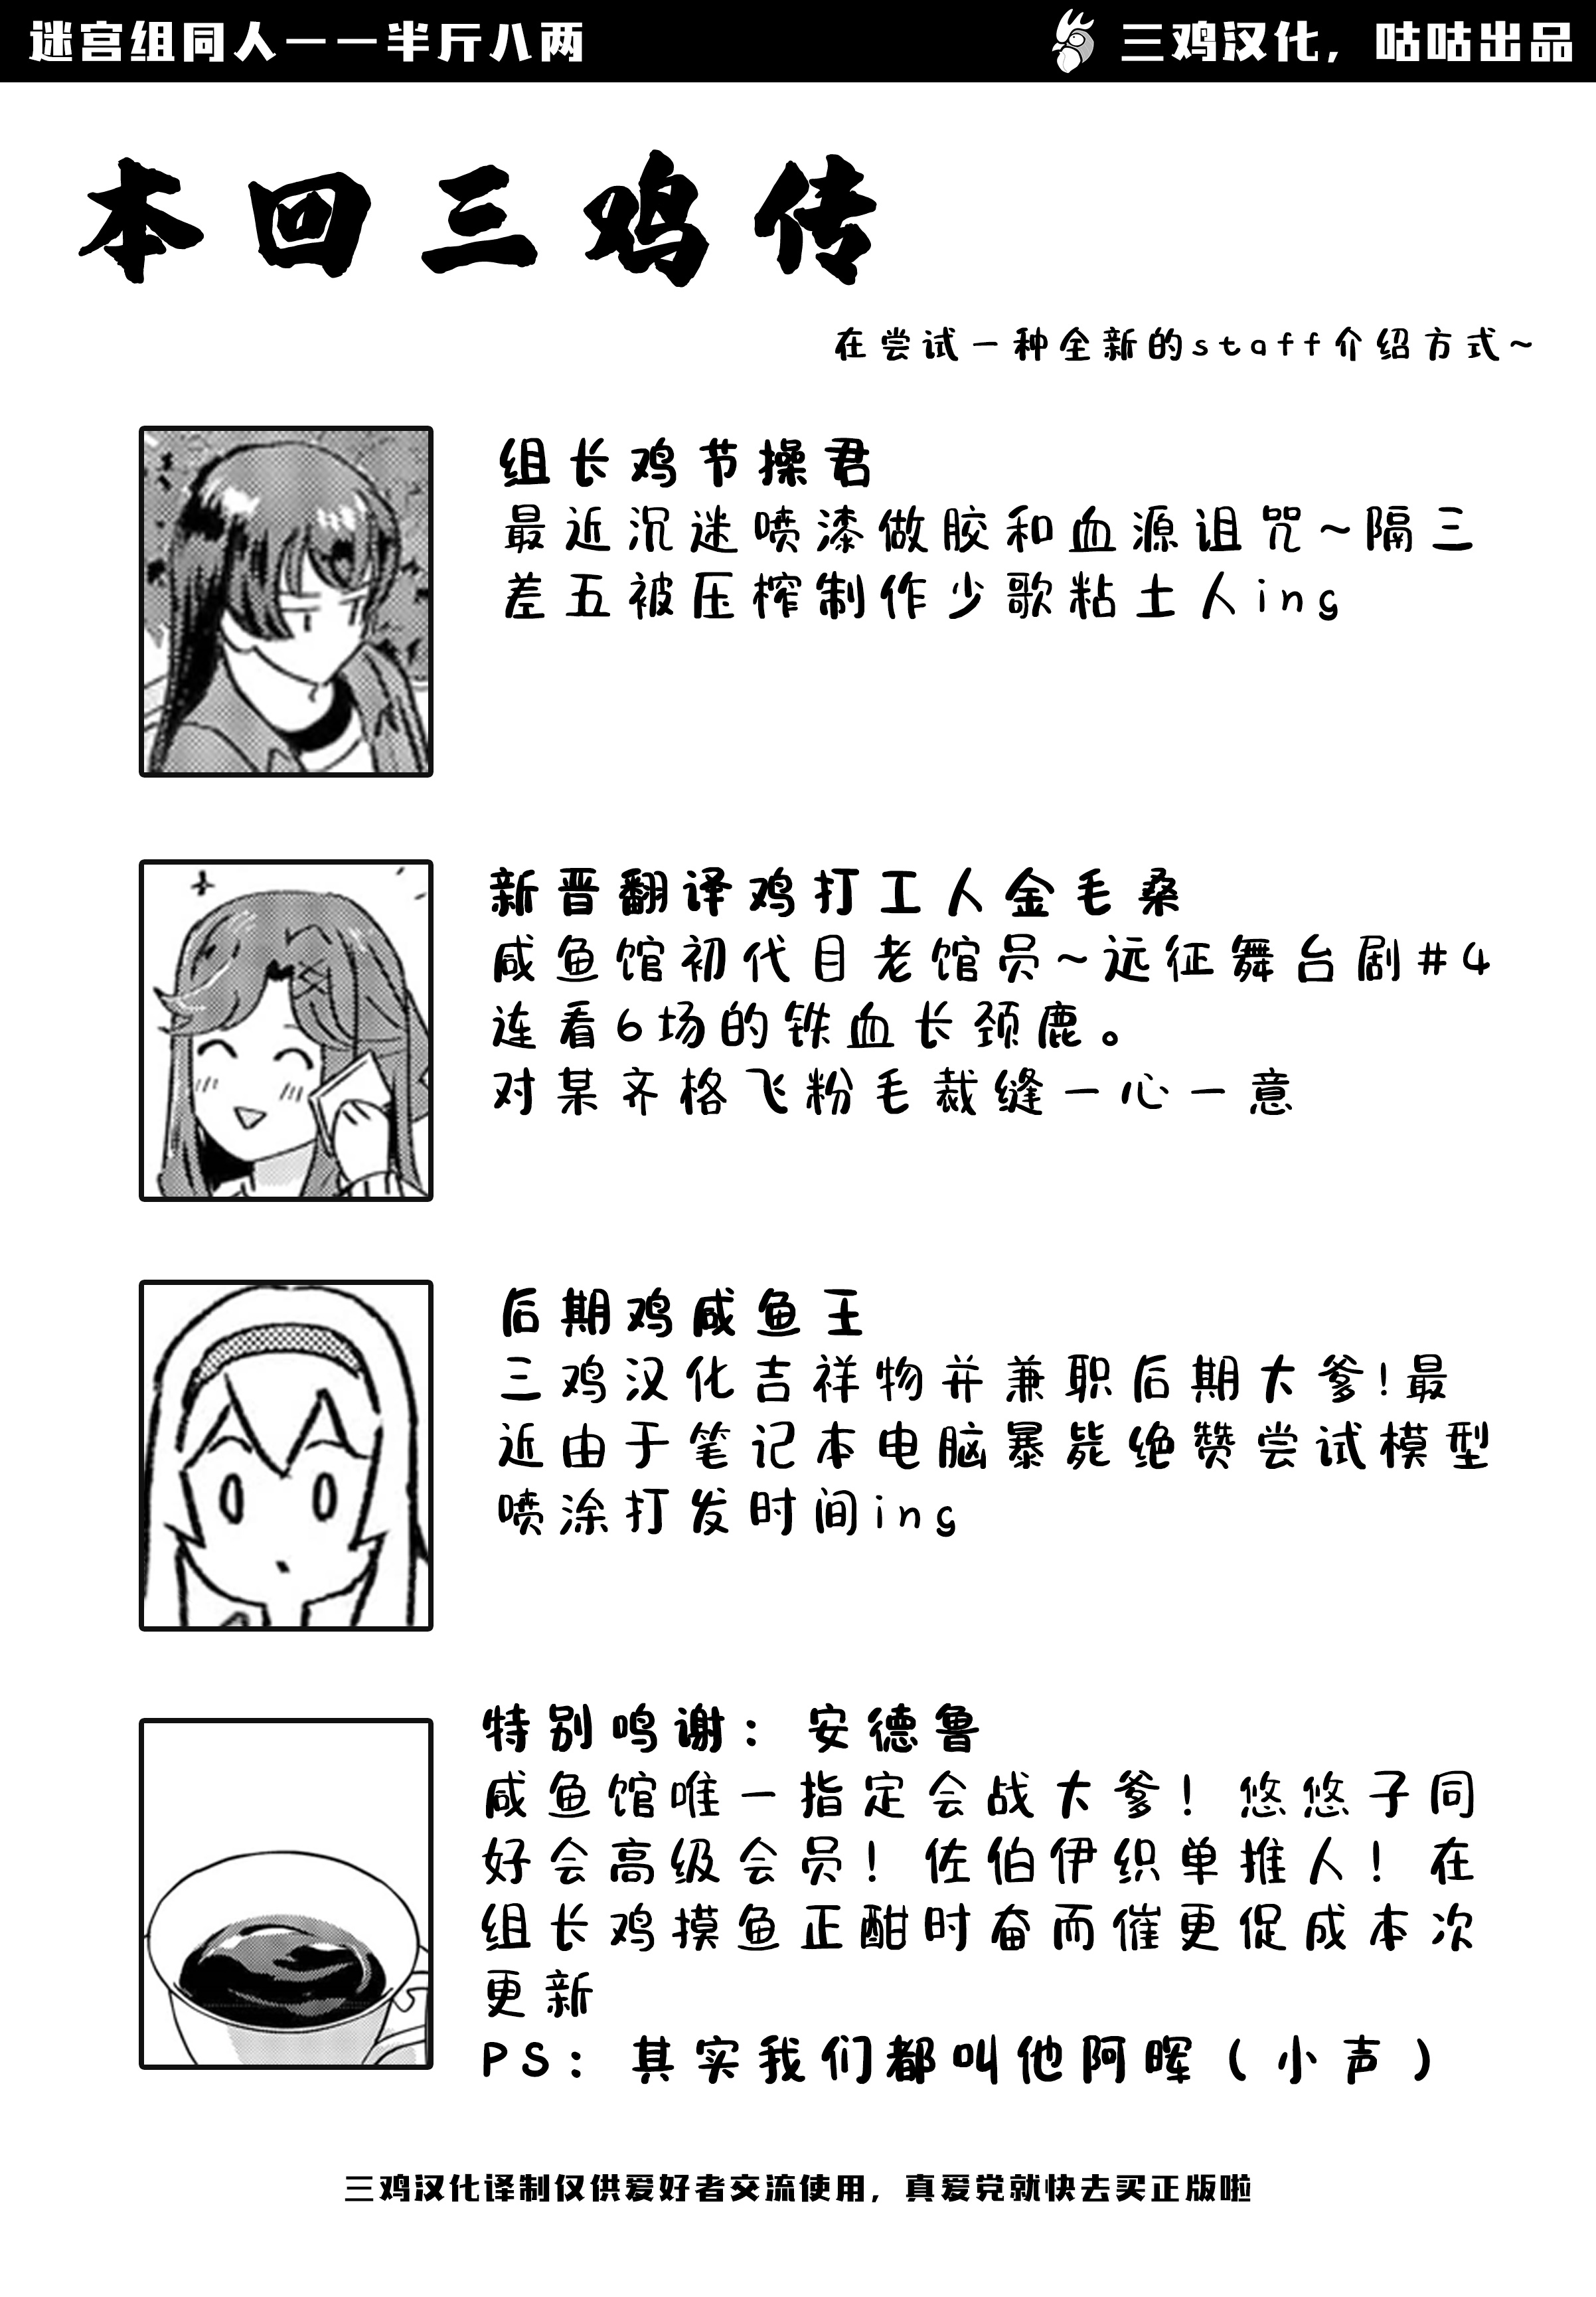 【中字】少女歌剧迷宫组同人漫画——ドッチモドッチ